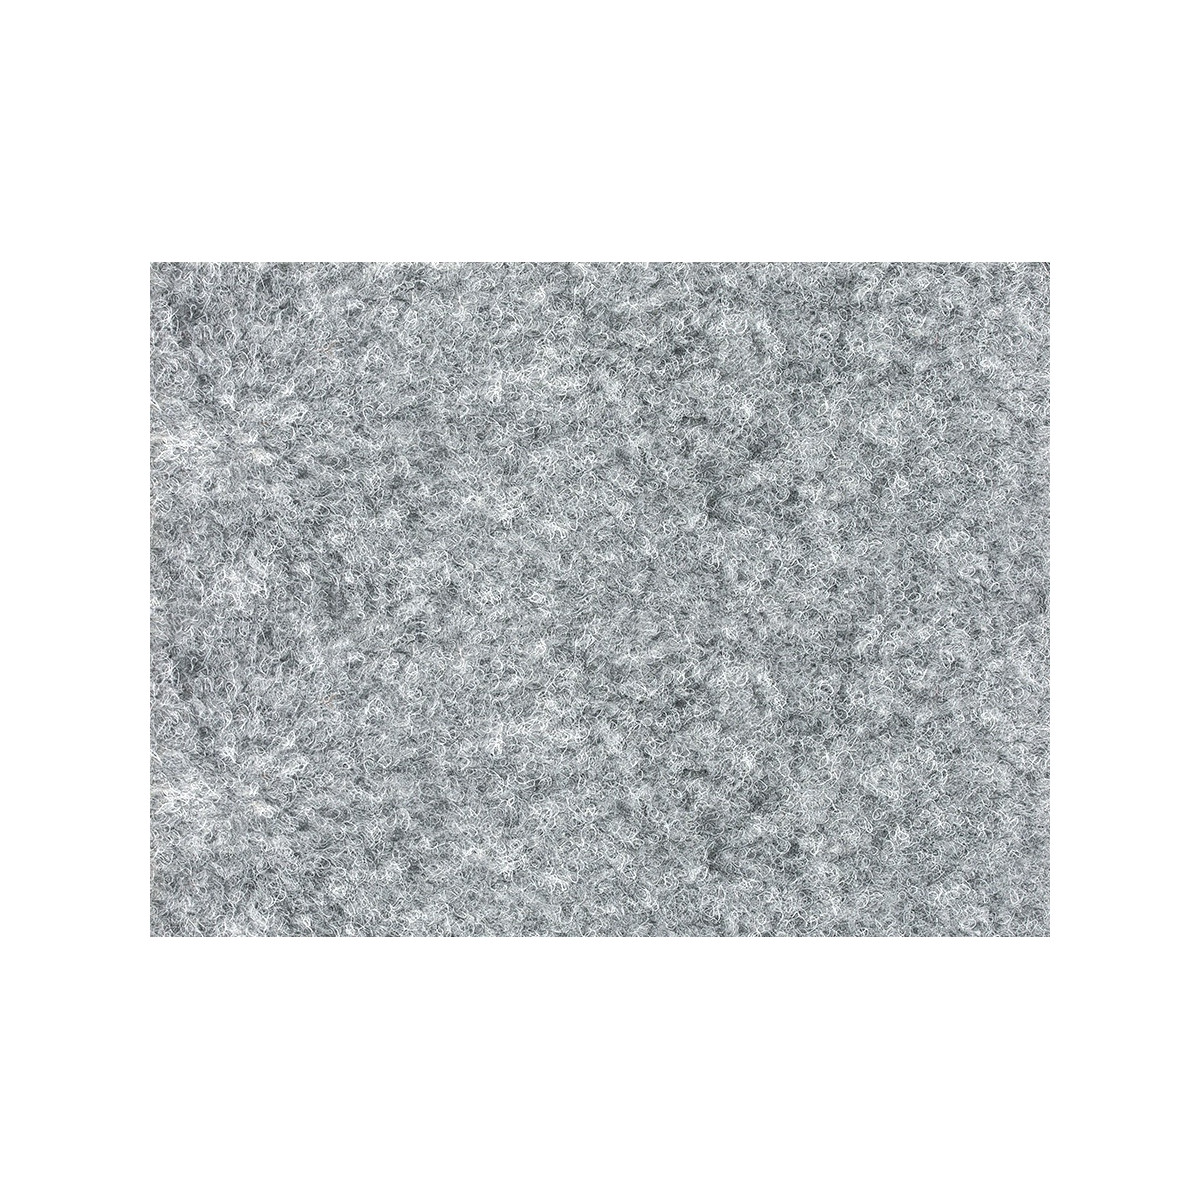 AKCE: 150x600 cm Metrážový koberec Santana 14 šedá s podkladem gel, zátěžový